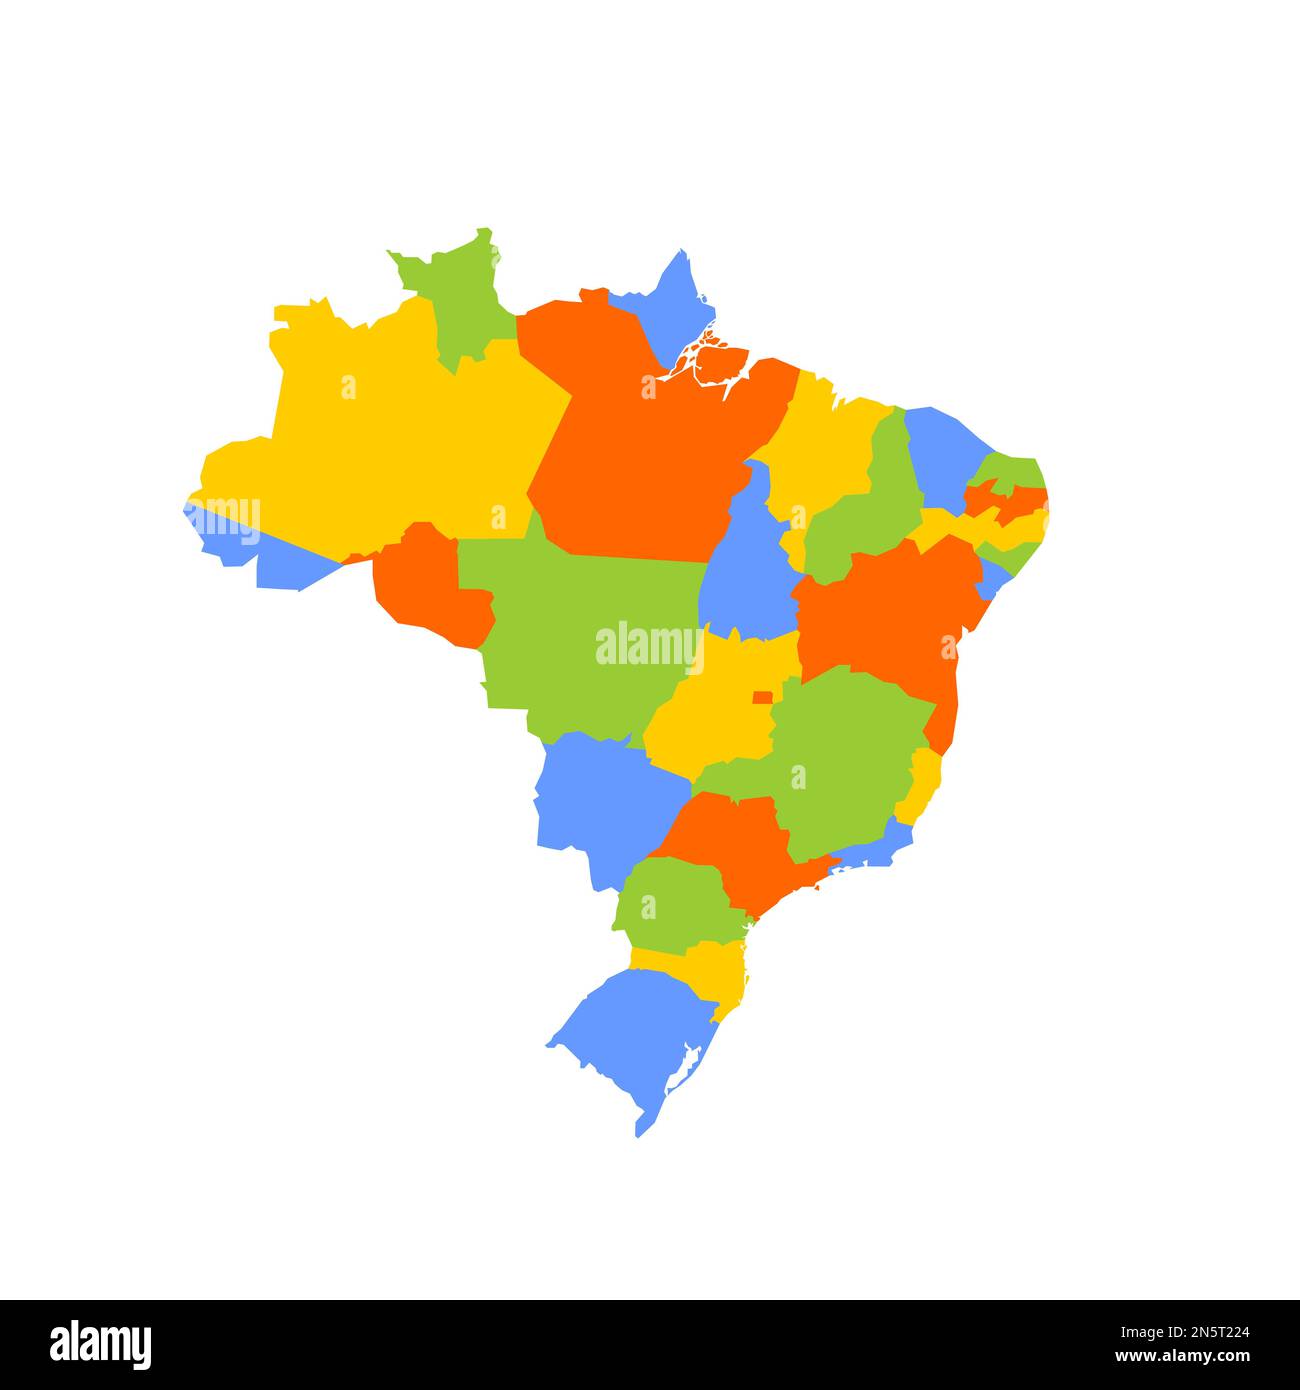 Politische Karte Brasiliens der Verwaltungsabteilungen - Föderative Einheiten Brasiliens. Leere farbige Vektorkarte. Stock Vektor